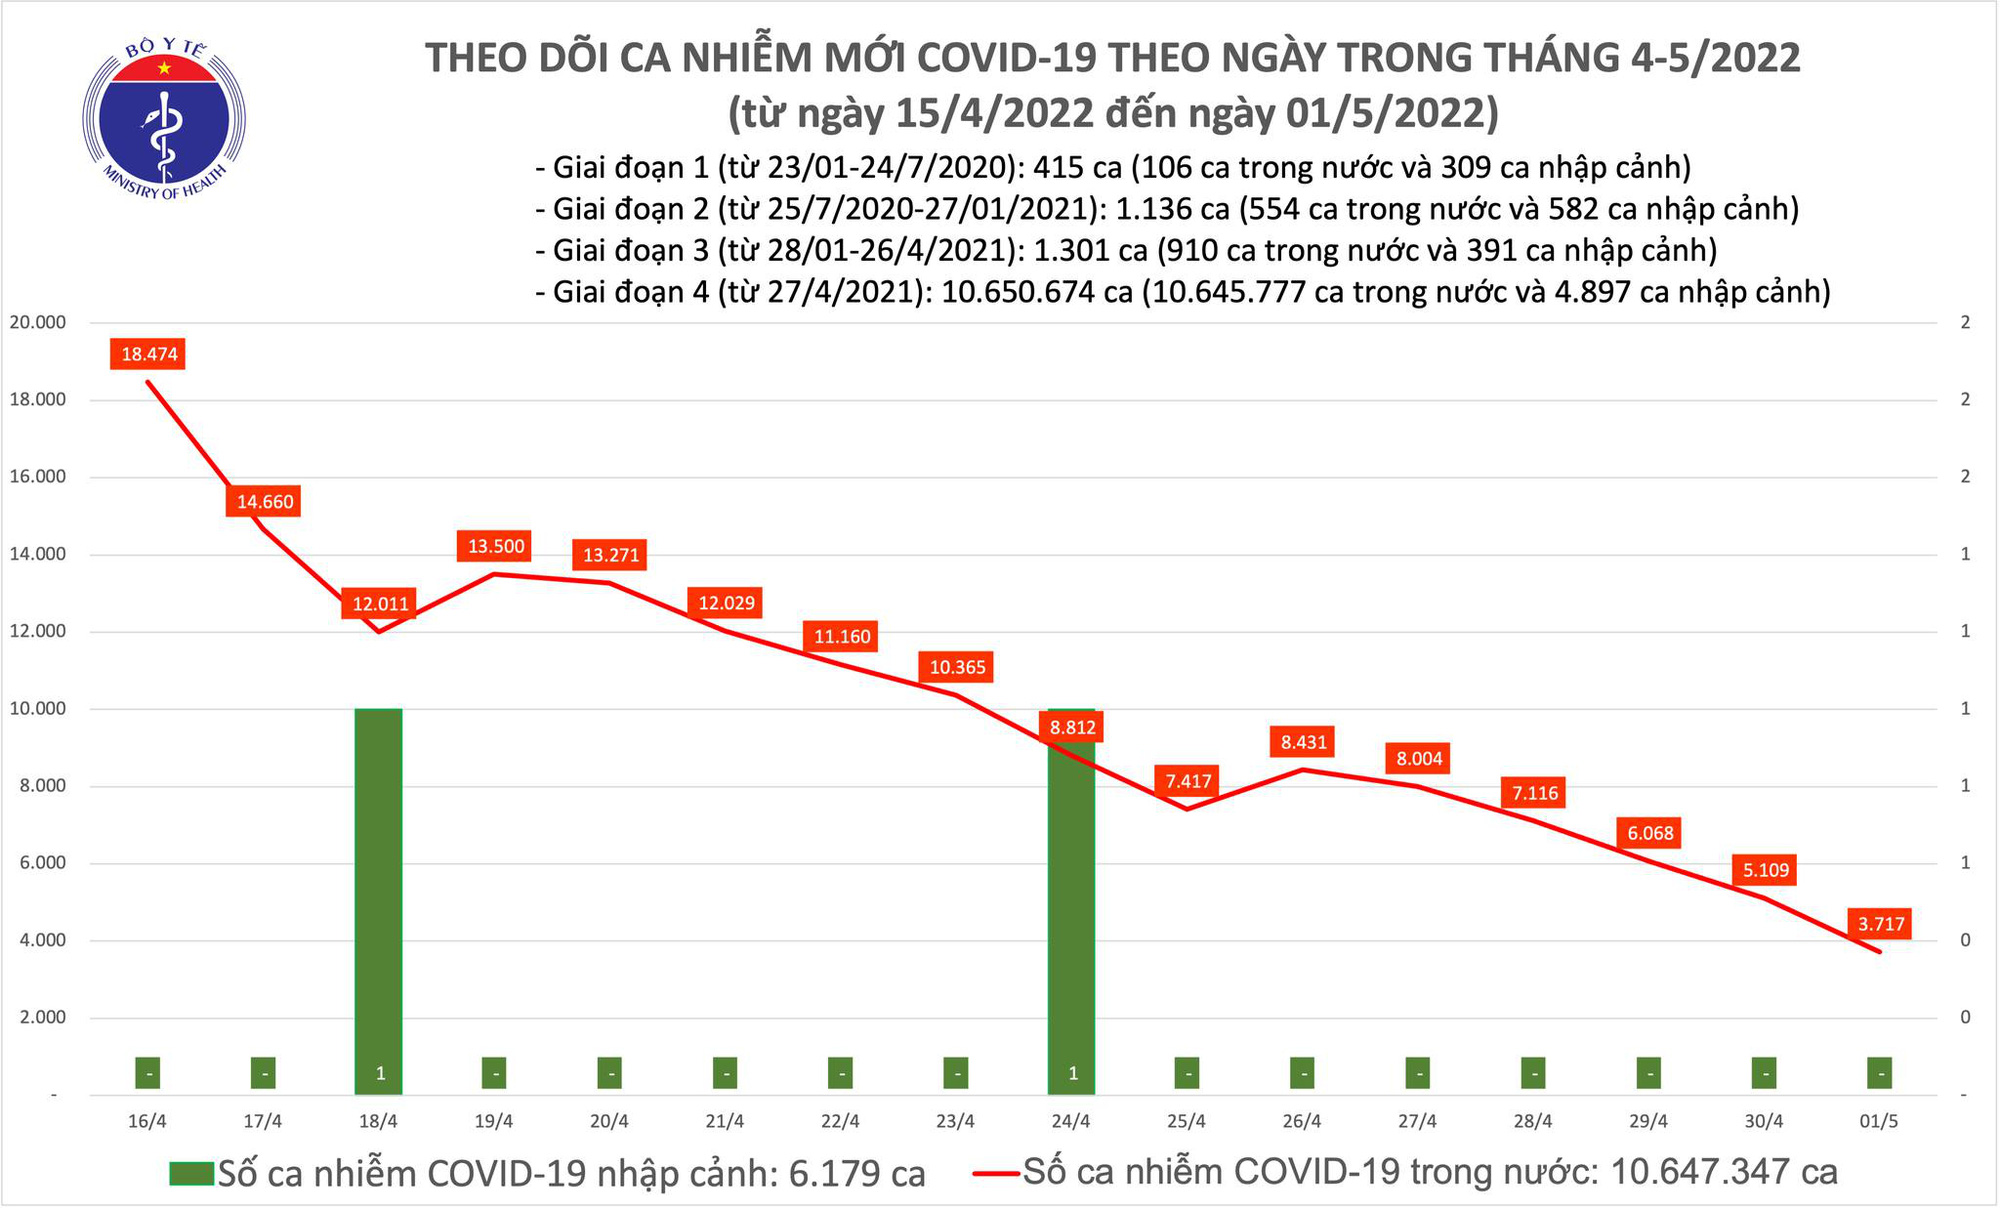 Ngày 1/5: Chỉ còn 3.717 ca COVID-19, giảm xuống thấp nhất trong khoảng 270 ngày qua - Ảnh 1.